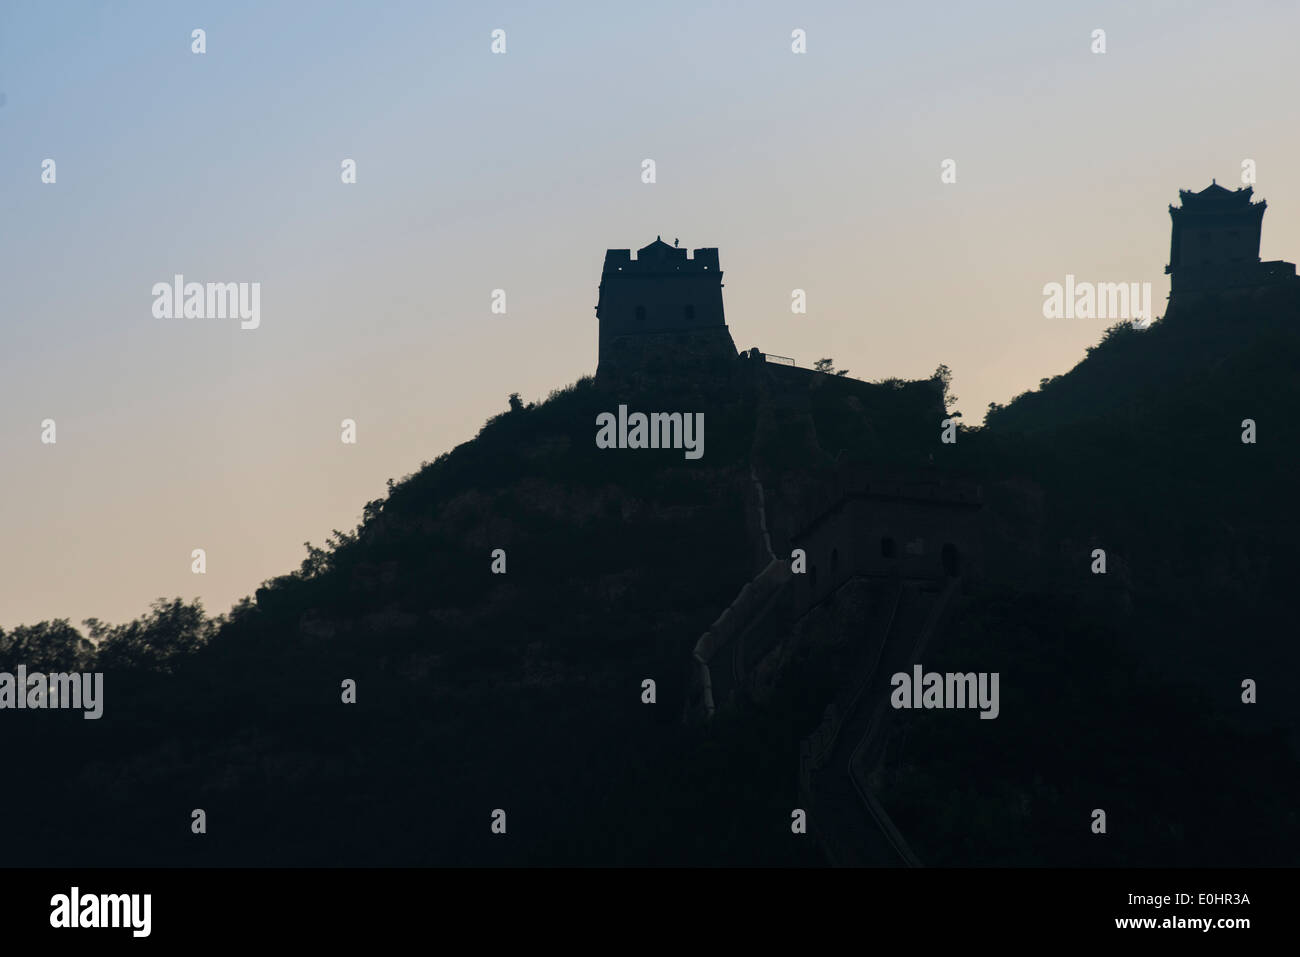 La section de passage Juyongguan de la Grande Muraille de Chine, Changping District, Beijing, Chine Banque D'Images